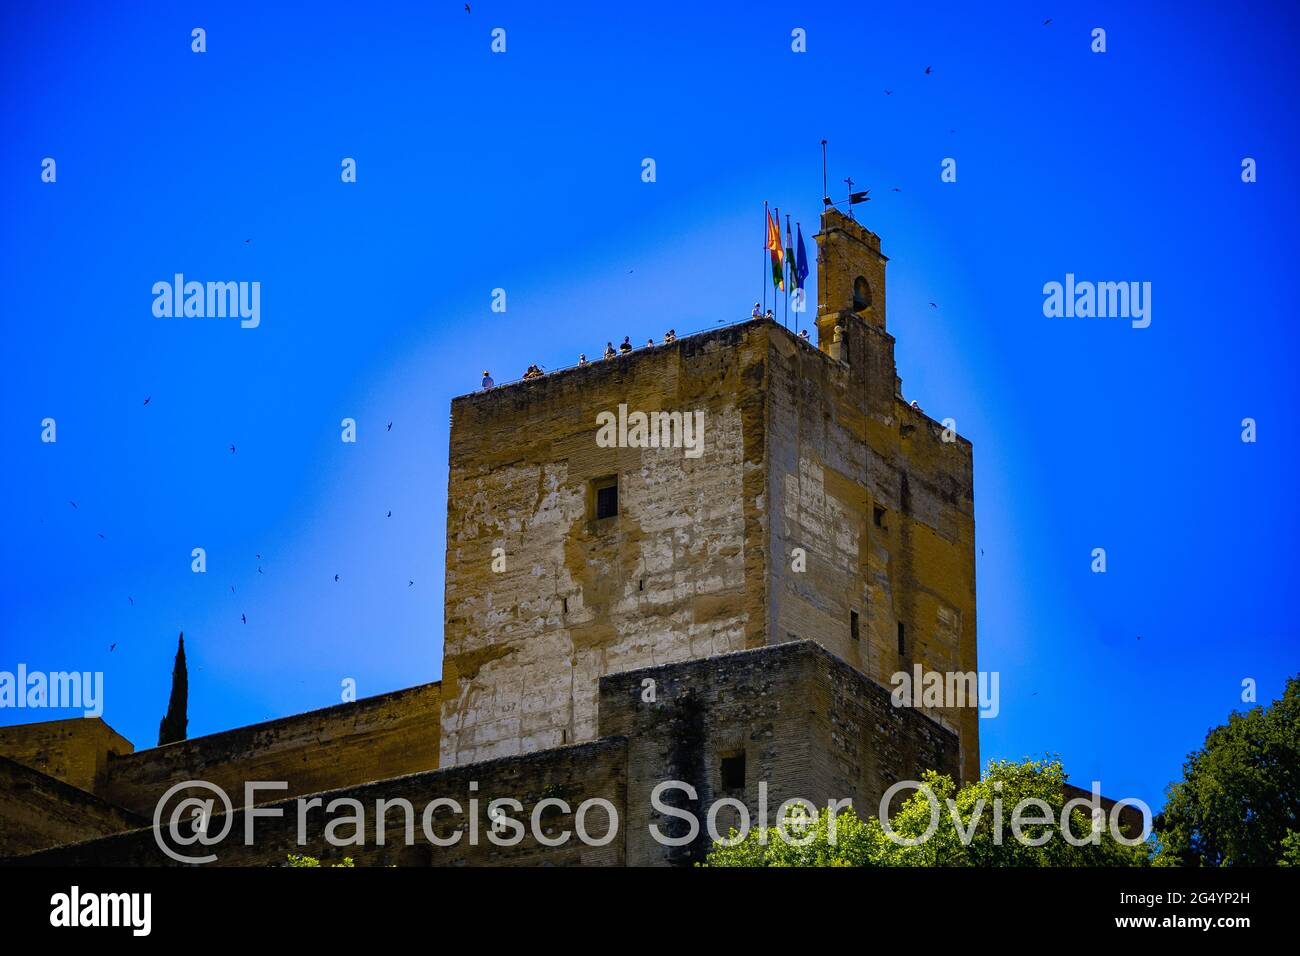 La Alhambra  de Granada situada en la parte más occidental del cerro de Sabika, de planta trapezoidal algo irregular, constituía la zona militar, Stock Photo